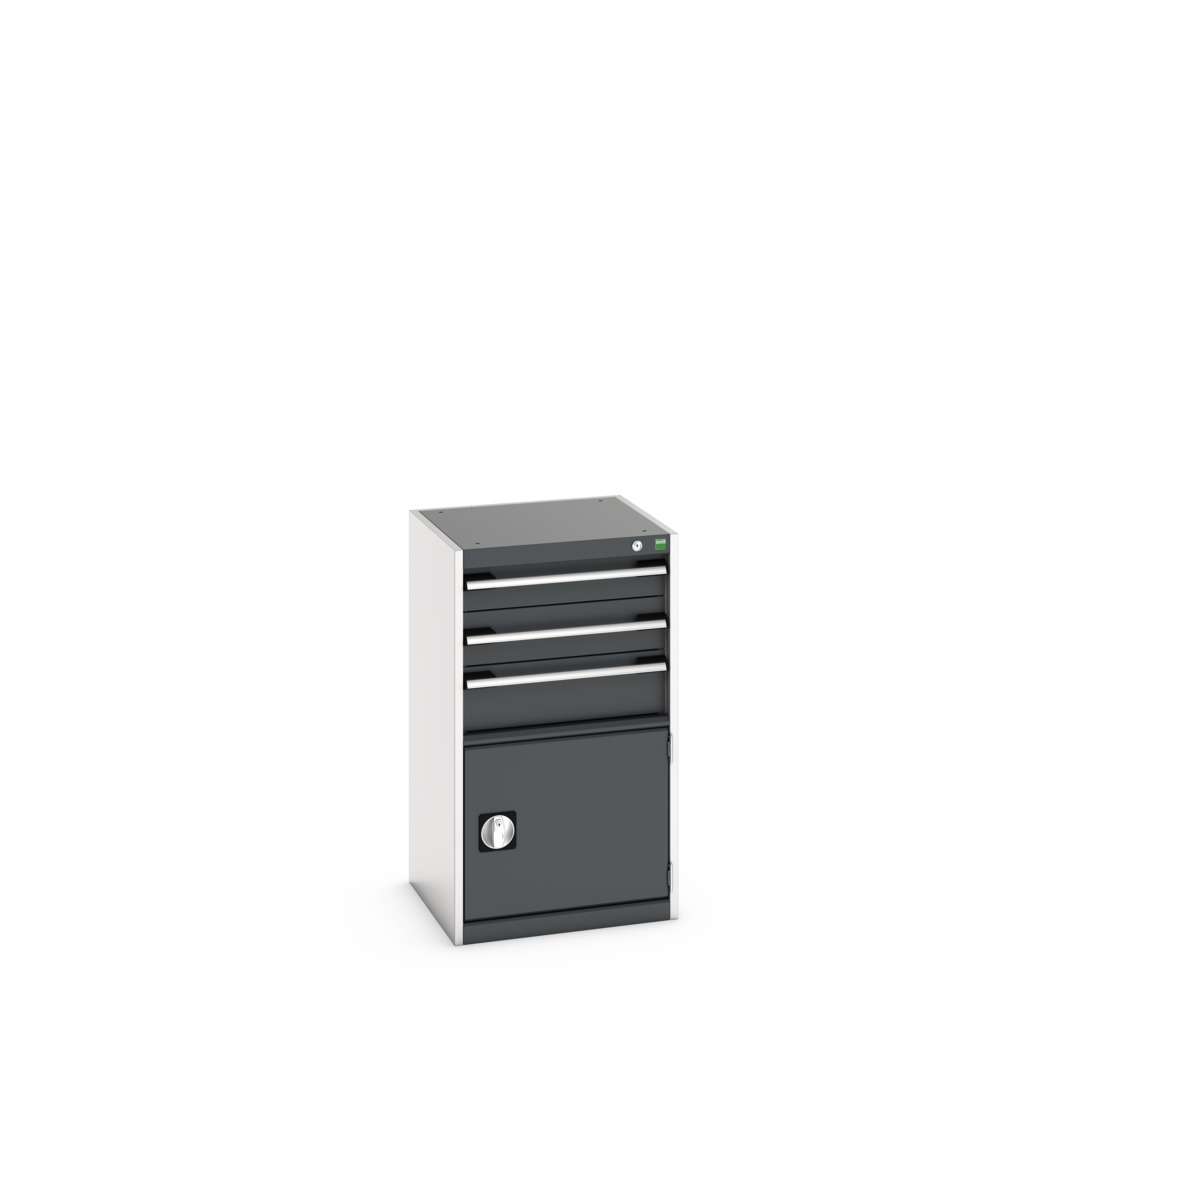 40010033. - cubio drawer-door cabinet